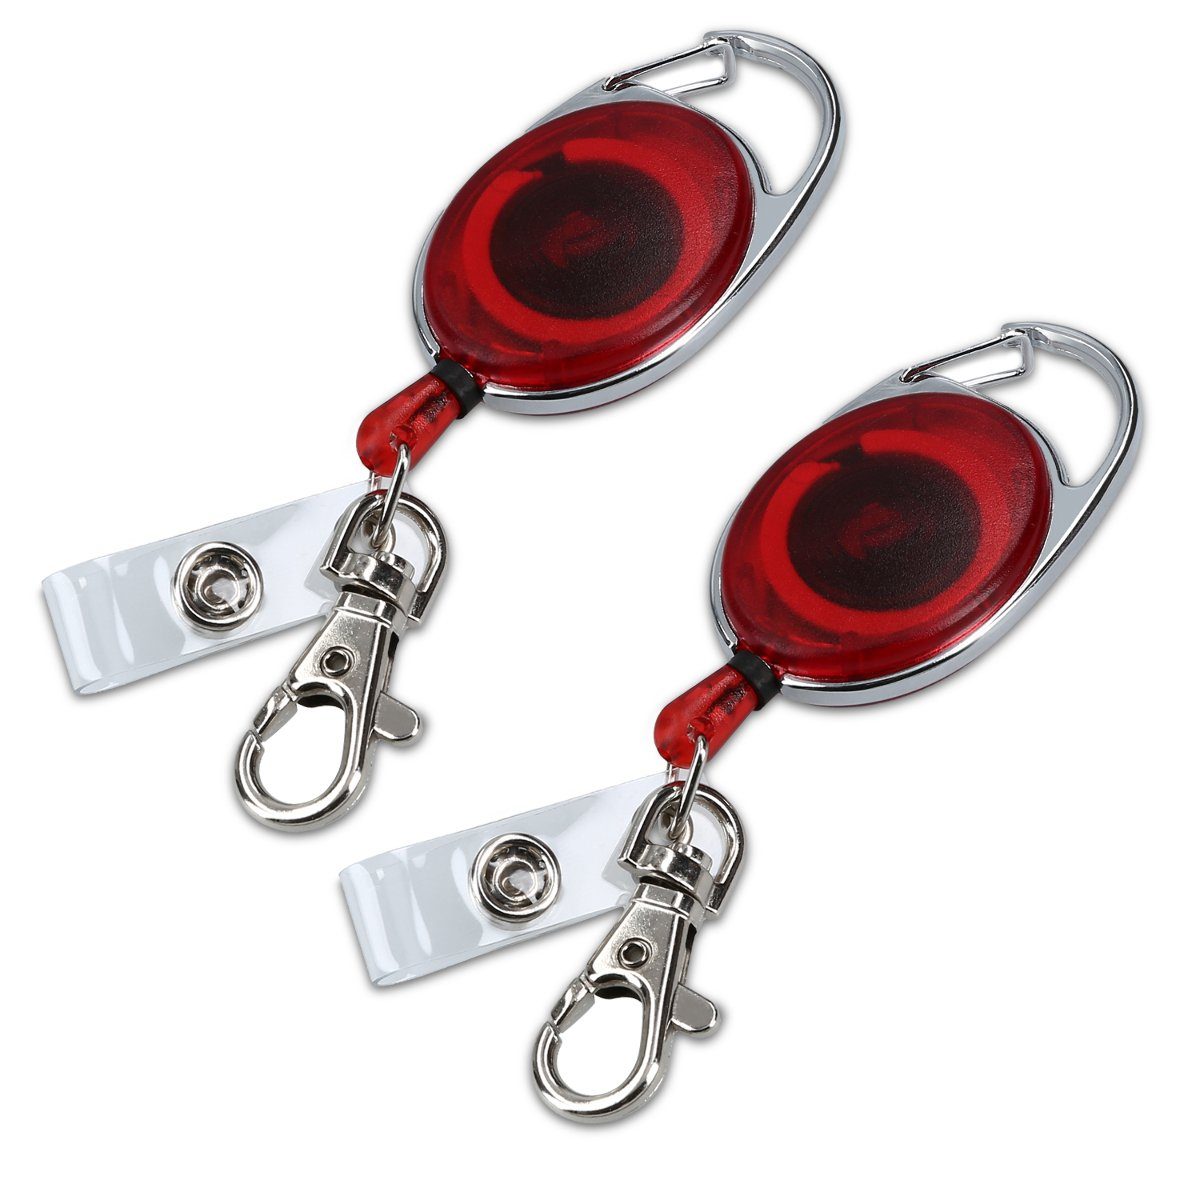 Rote Schlüsselanhänger online kaufen | OTTO